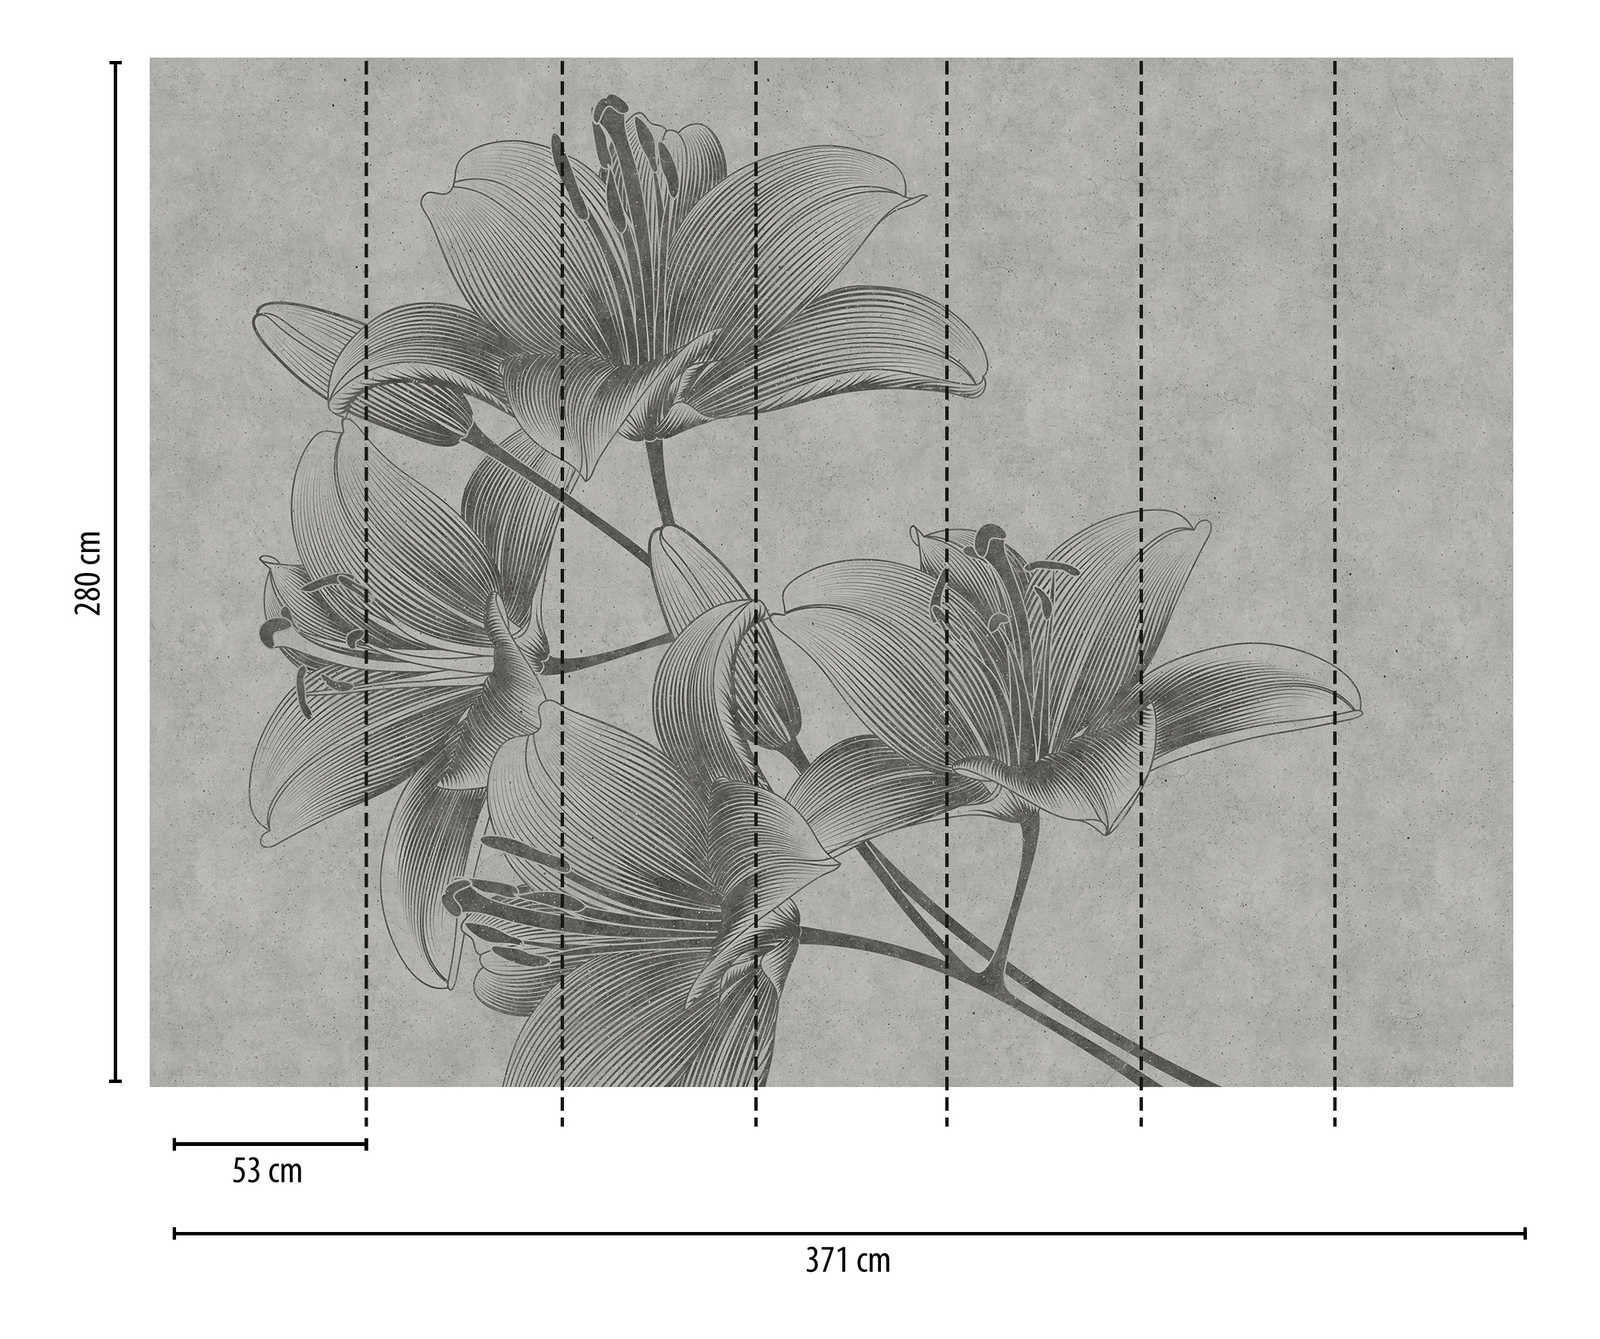             Papel pintado novedad | papel pintado floral gris lirios en estilo line art
        